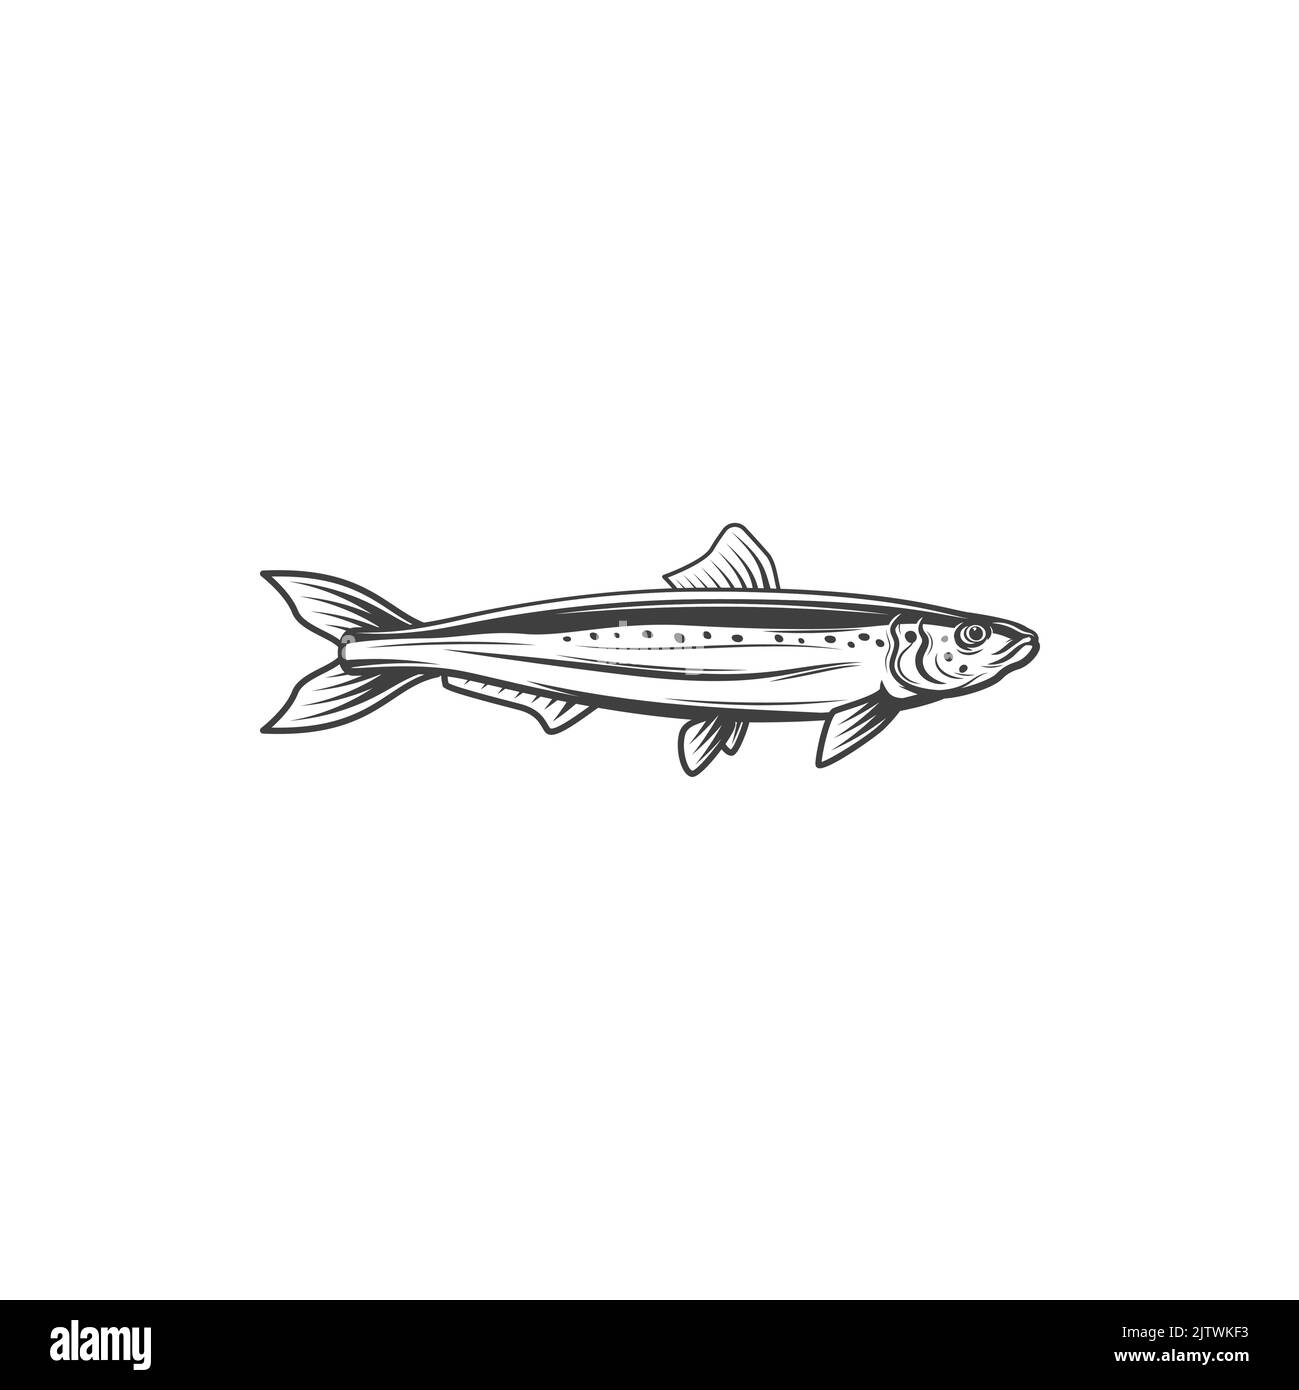 Chub mackerel Black and White Stock Photos & Images - Alamy